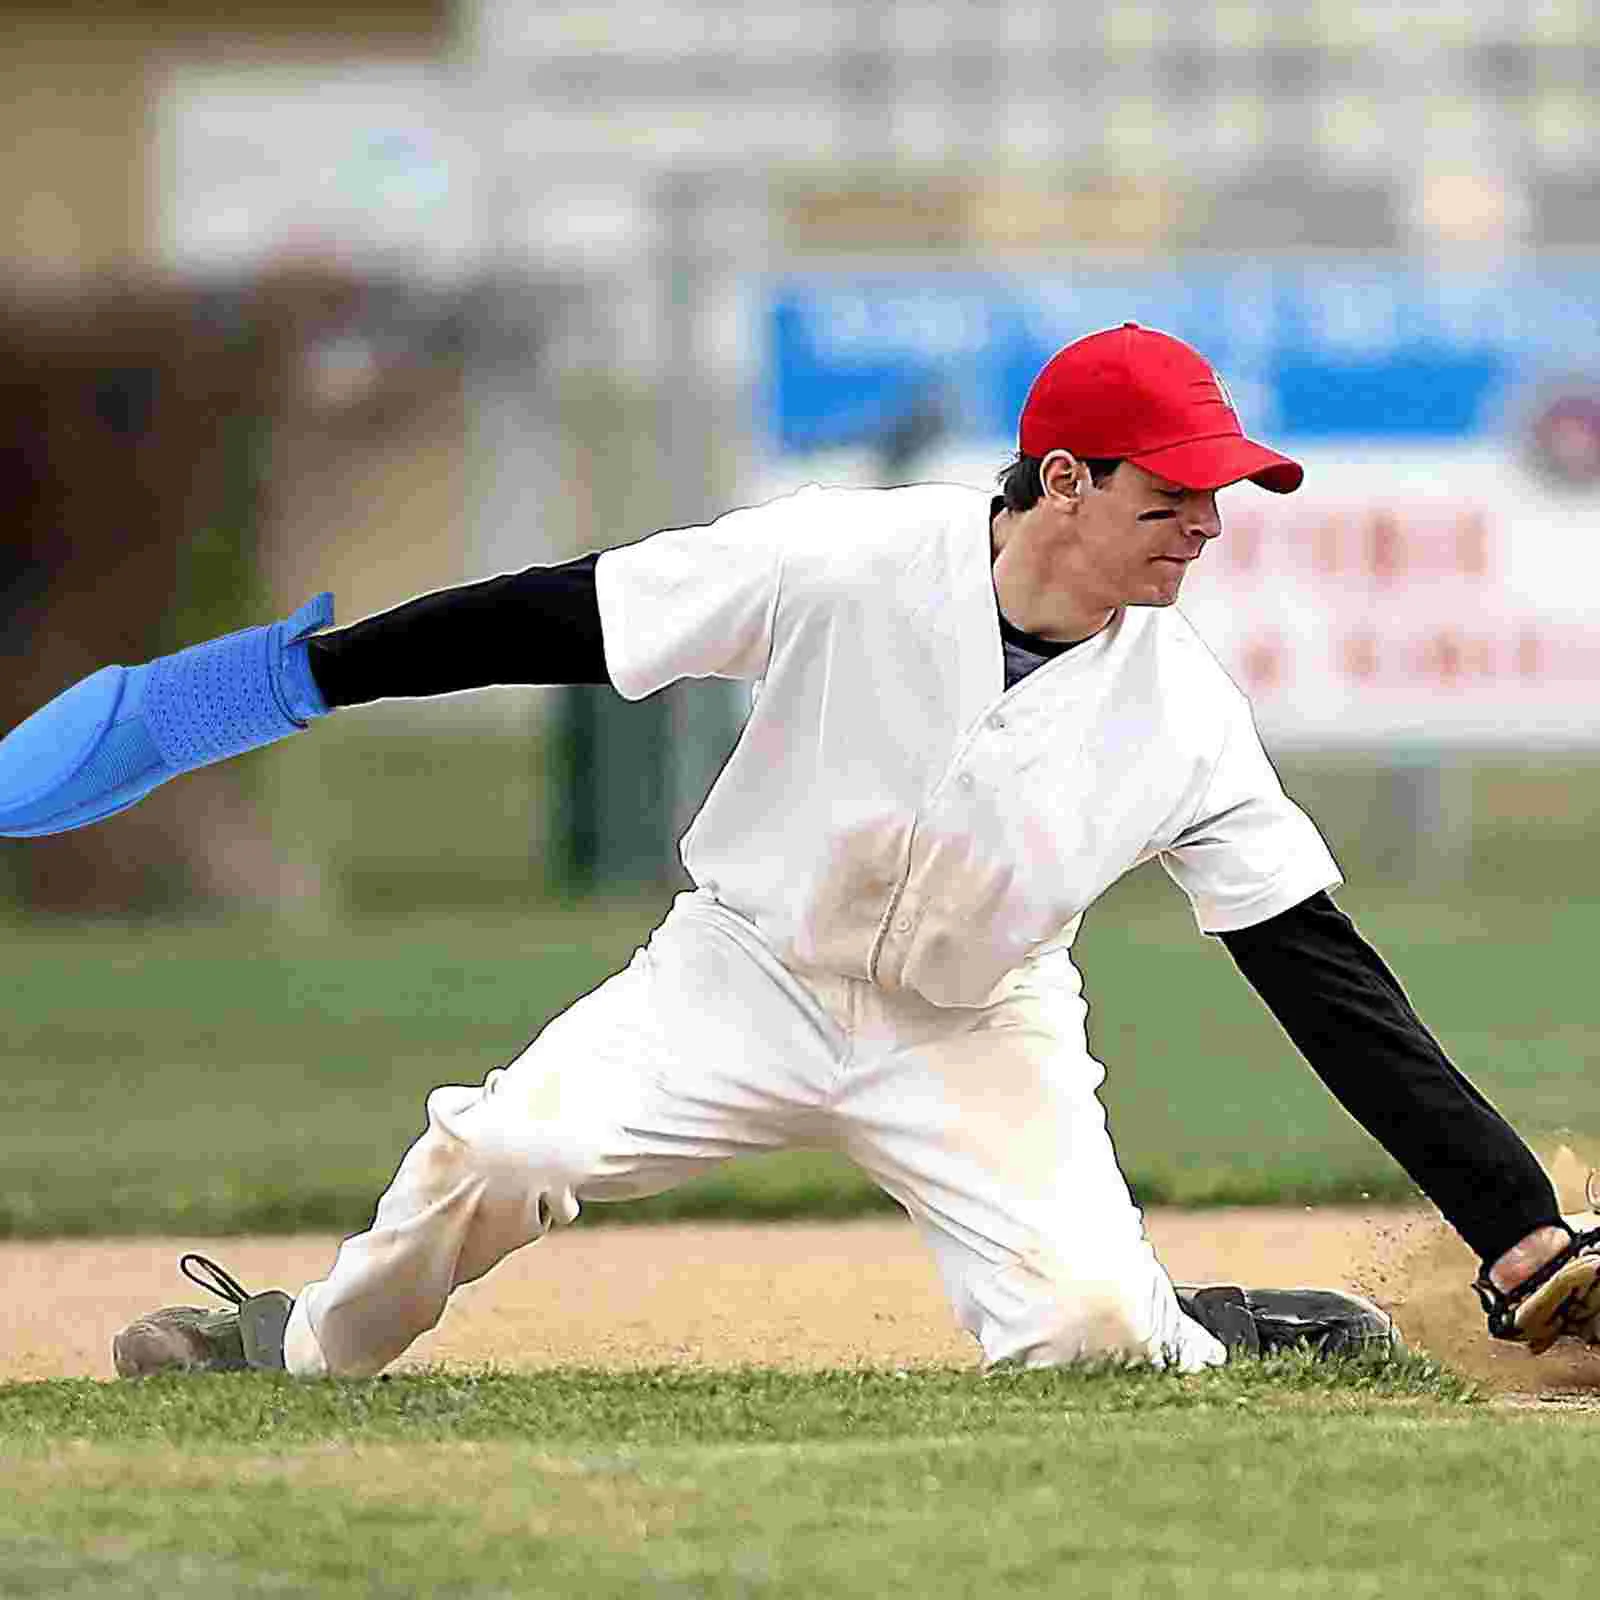 

Бейсбольная раздвижная варежка, раздвижная перчатка, защита для Софтбола, универсальная защита для правой или левой руки, Молодежный бейсбольный софтбол